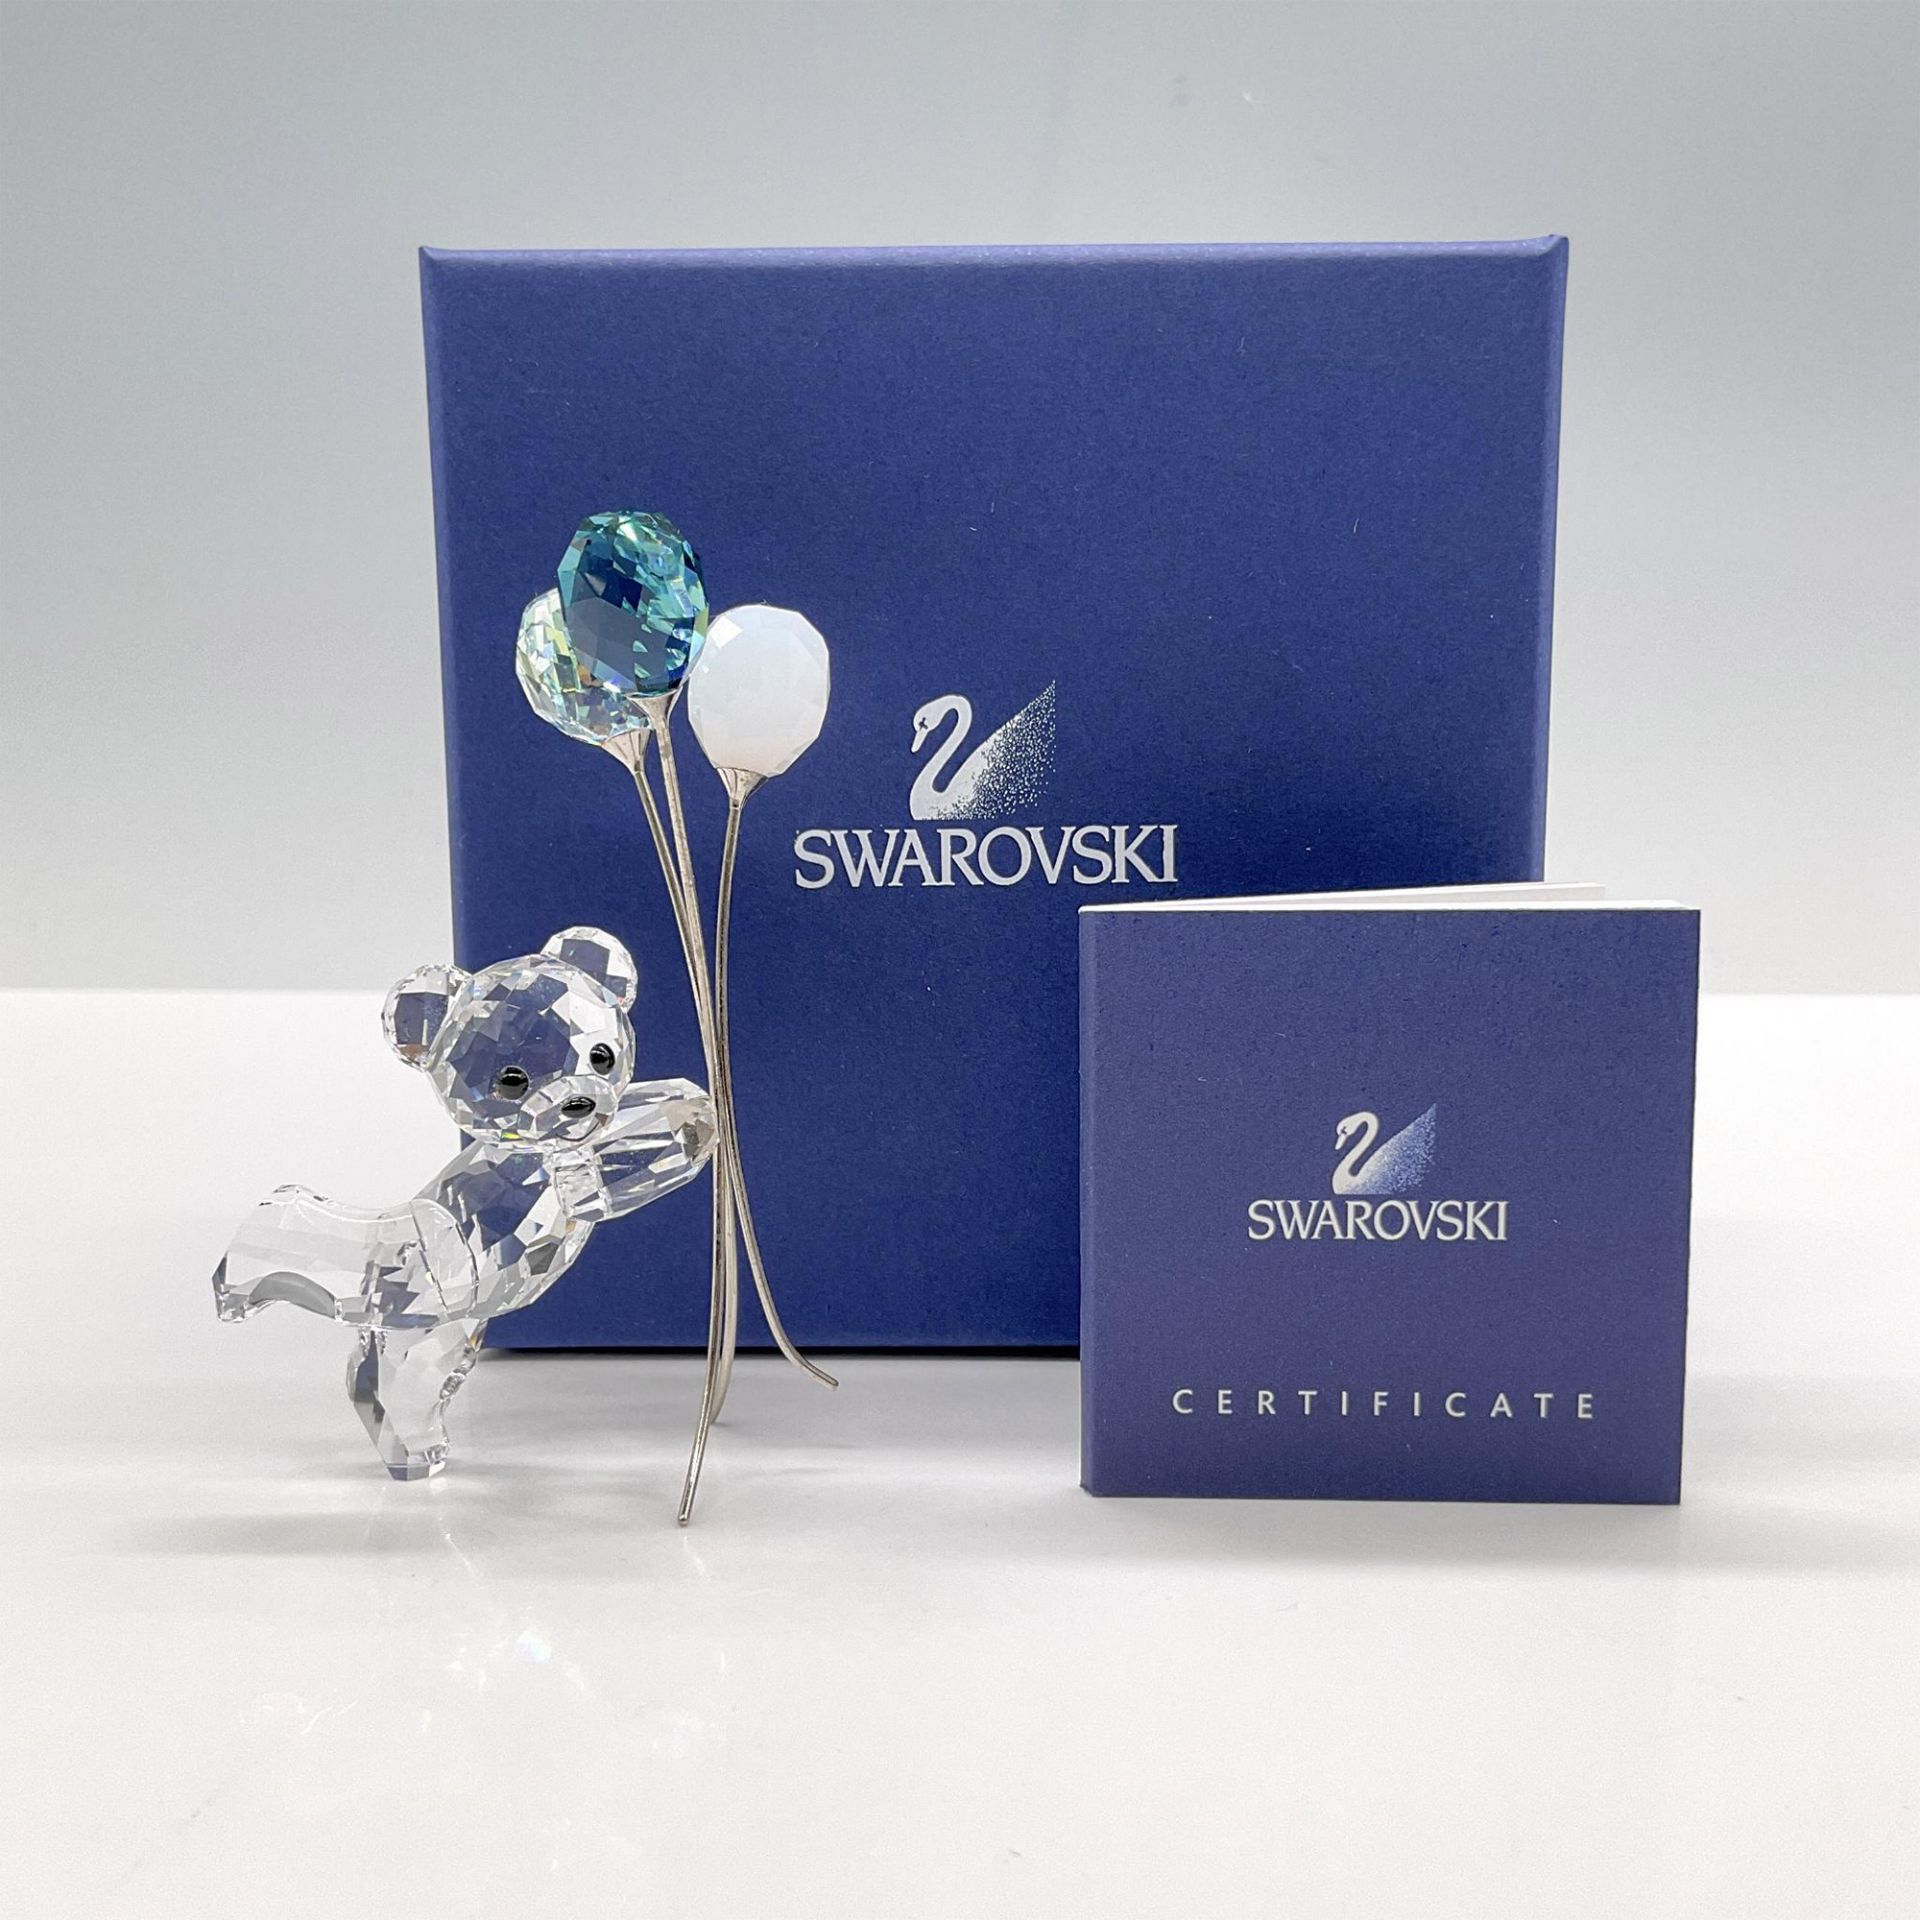 Swarovski Crystal Figurine, Ballons For You - Image 4 of 4